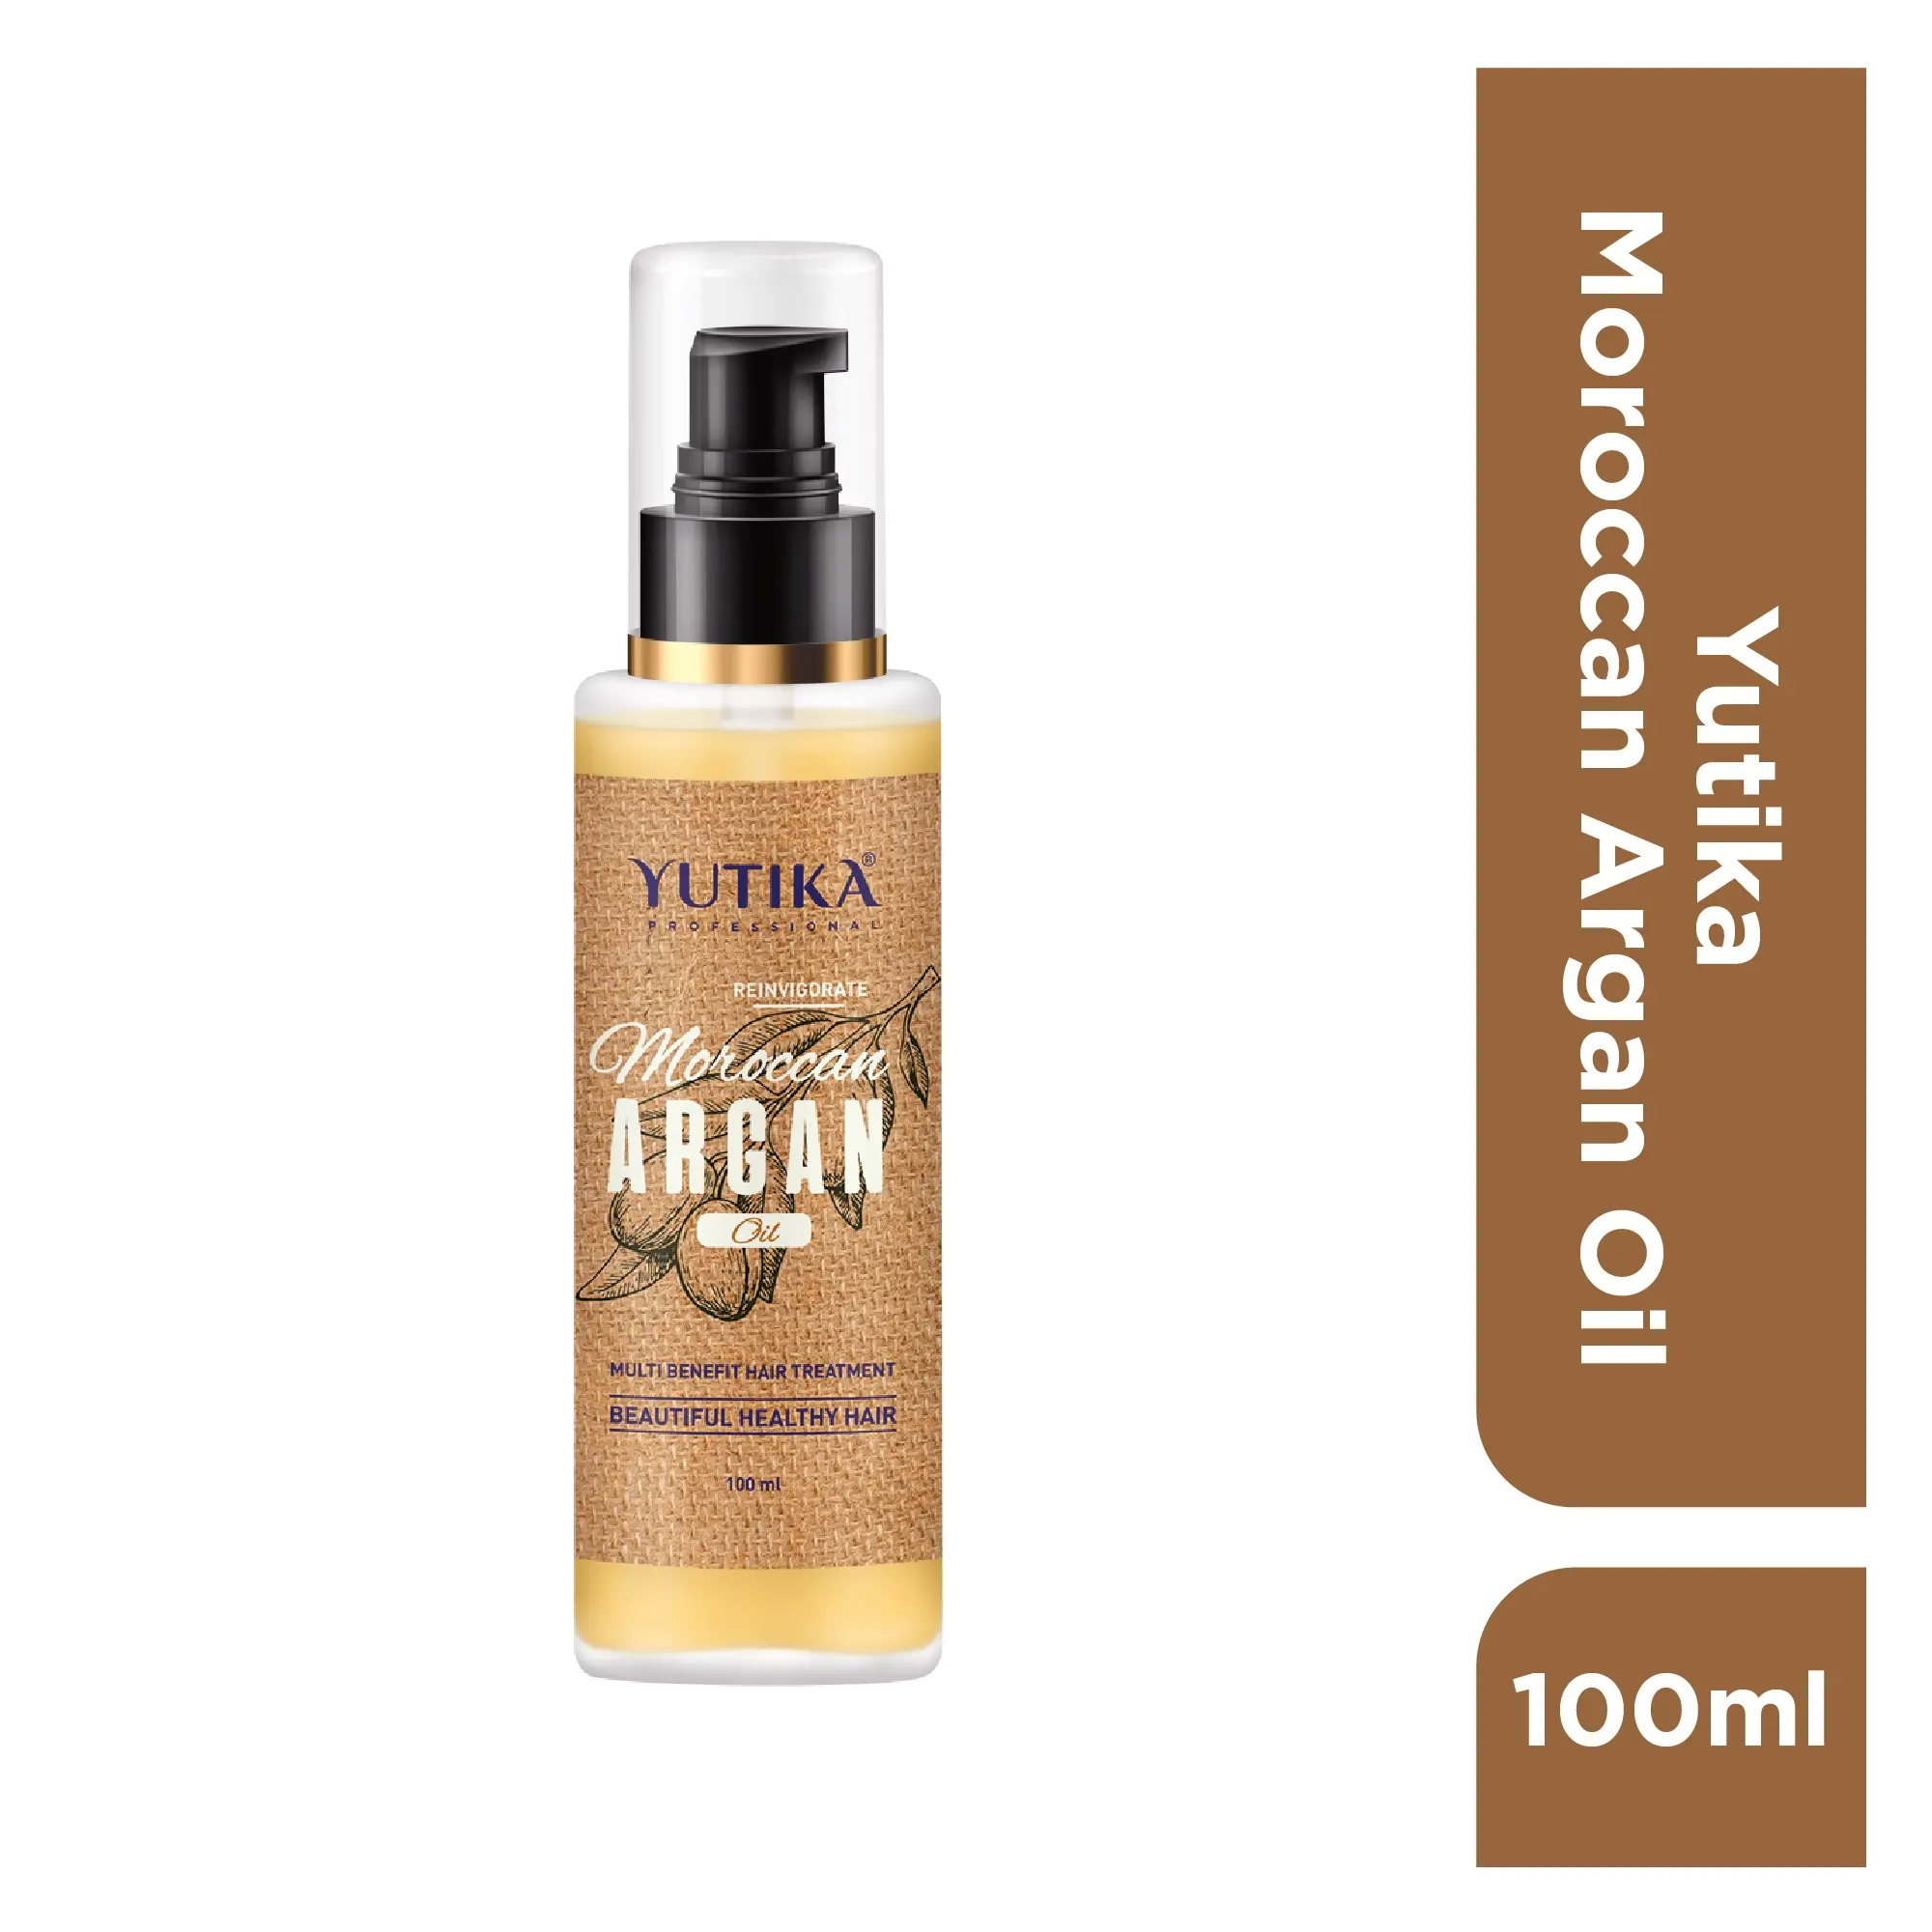 Aceite de Argán marroquí profesional Yutika para cabello-100ml, aceite capilar sedoso, brillante y nutrido para hombres y mujeres